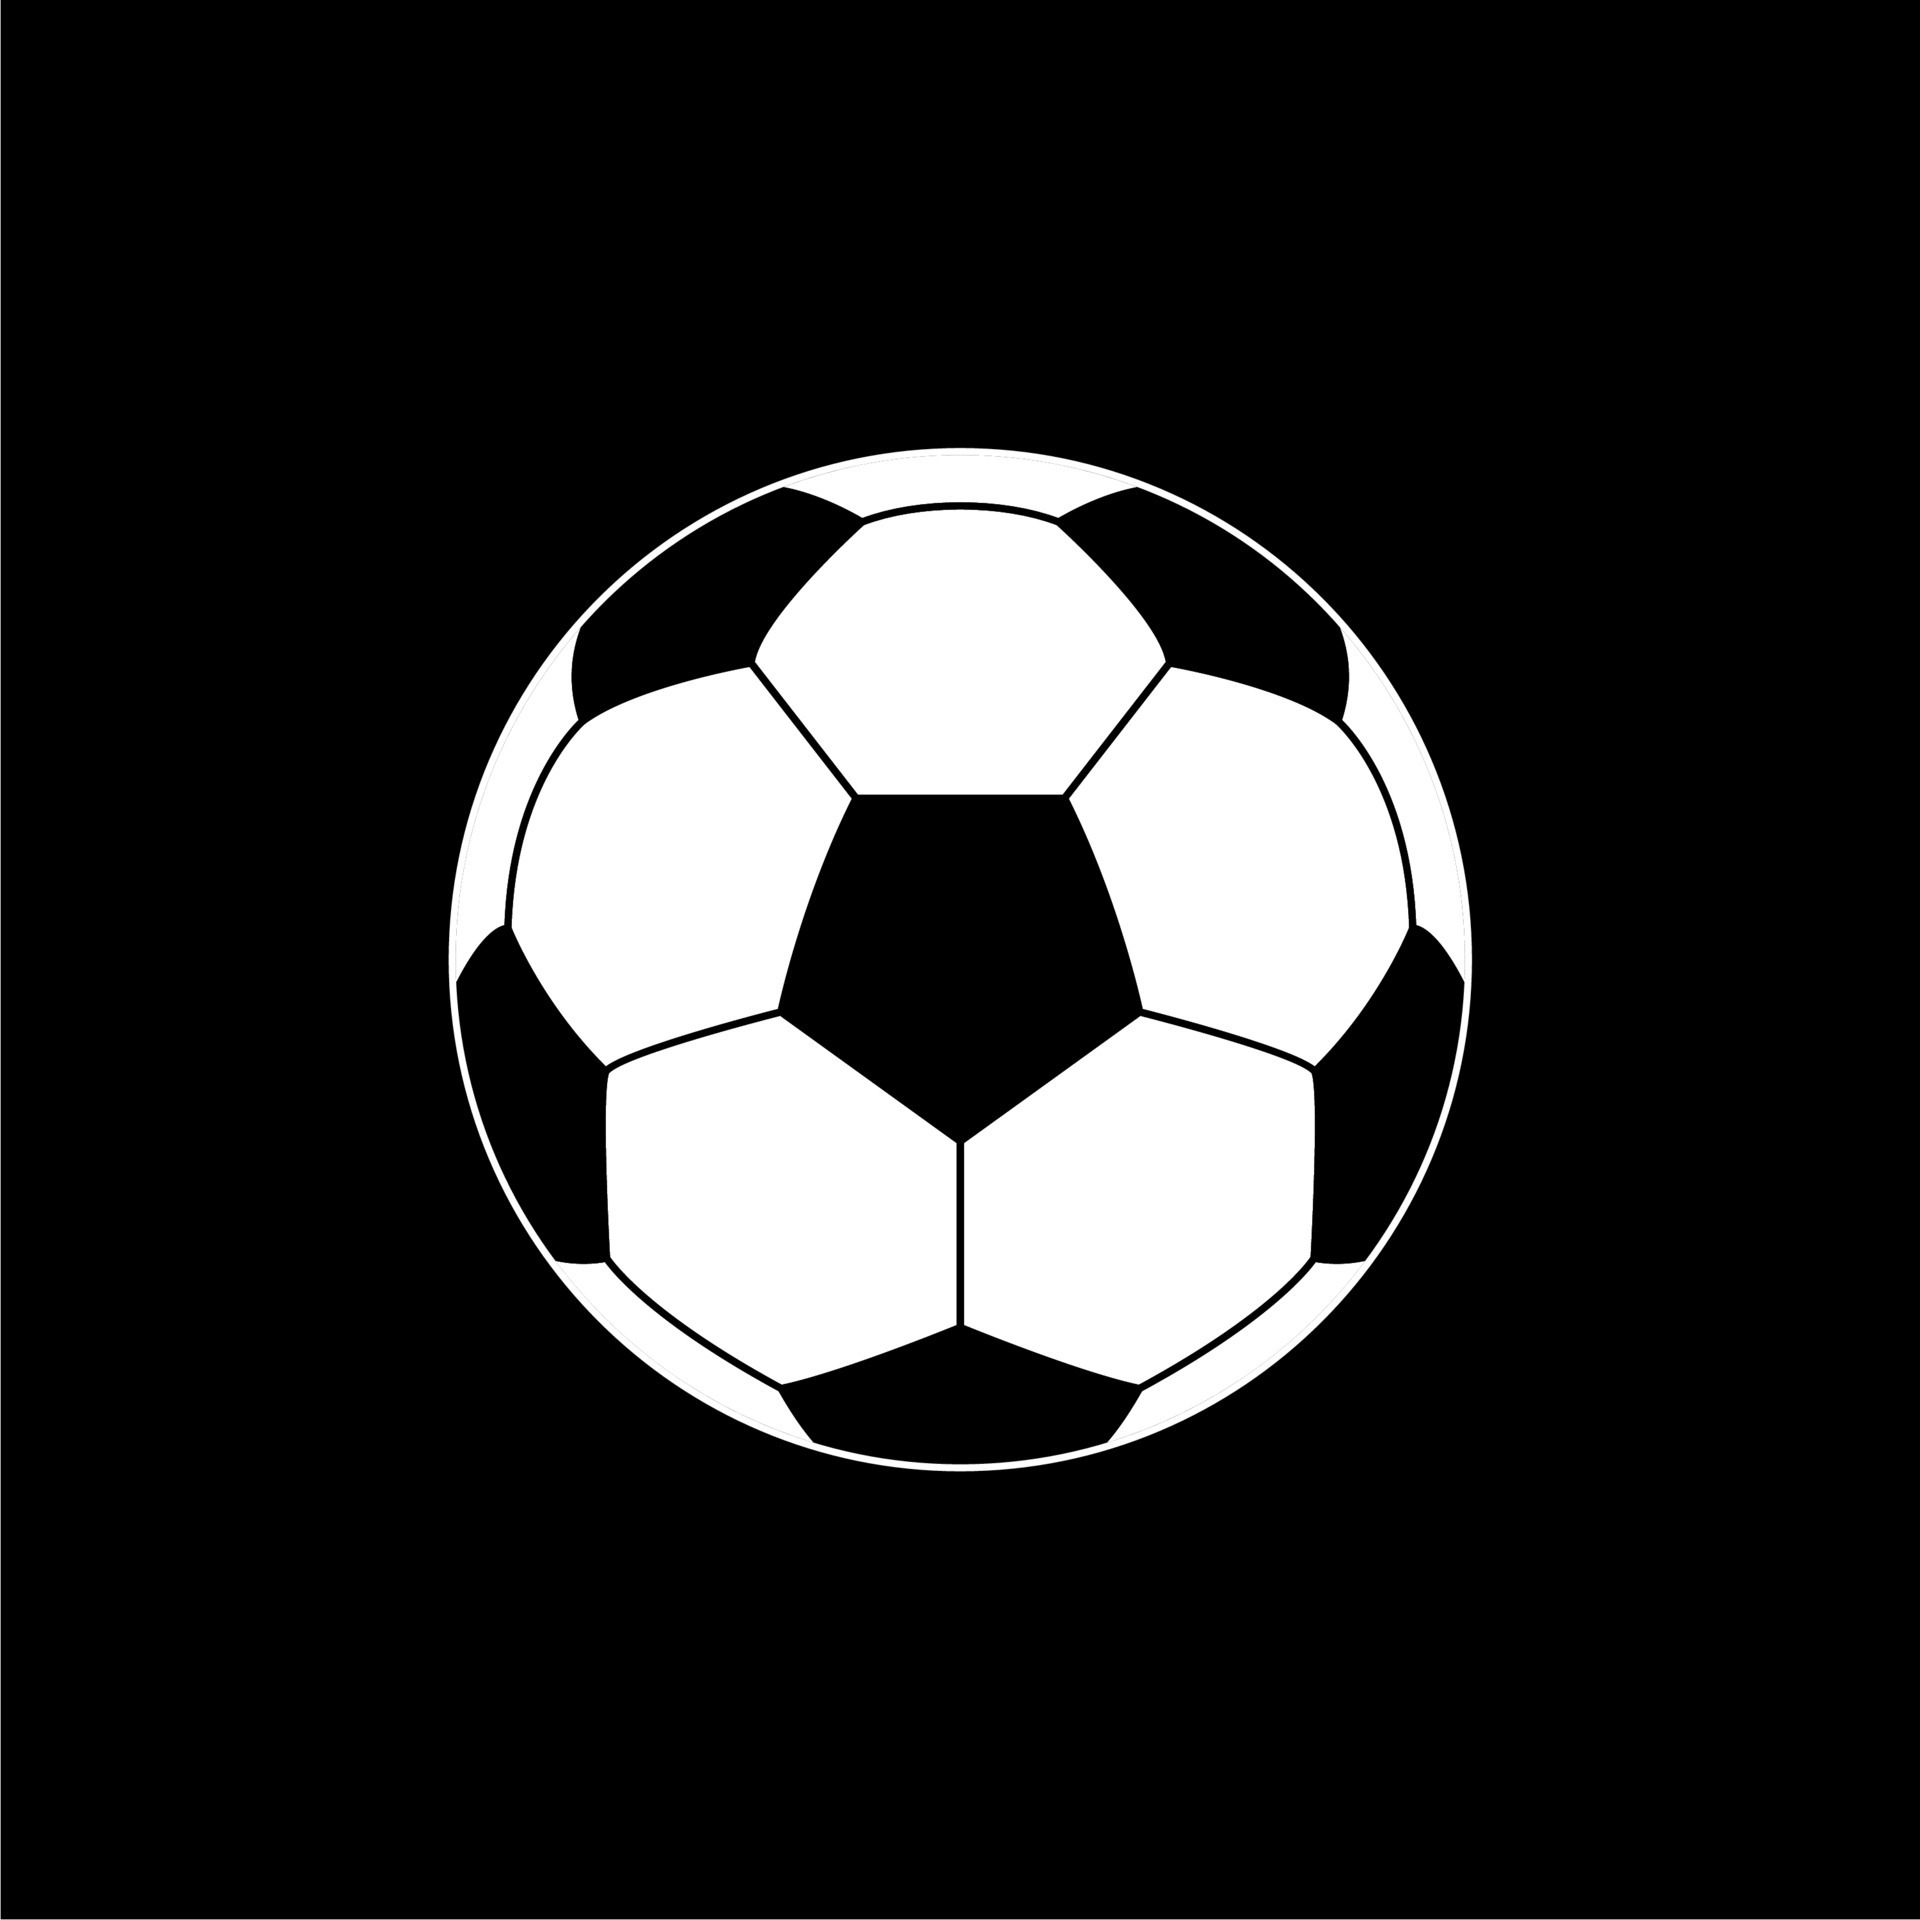 Futebol Bola Esporte - Gráfico vetorial grátis no Pixabay